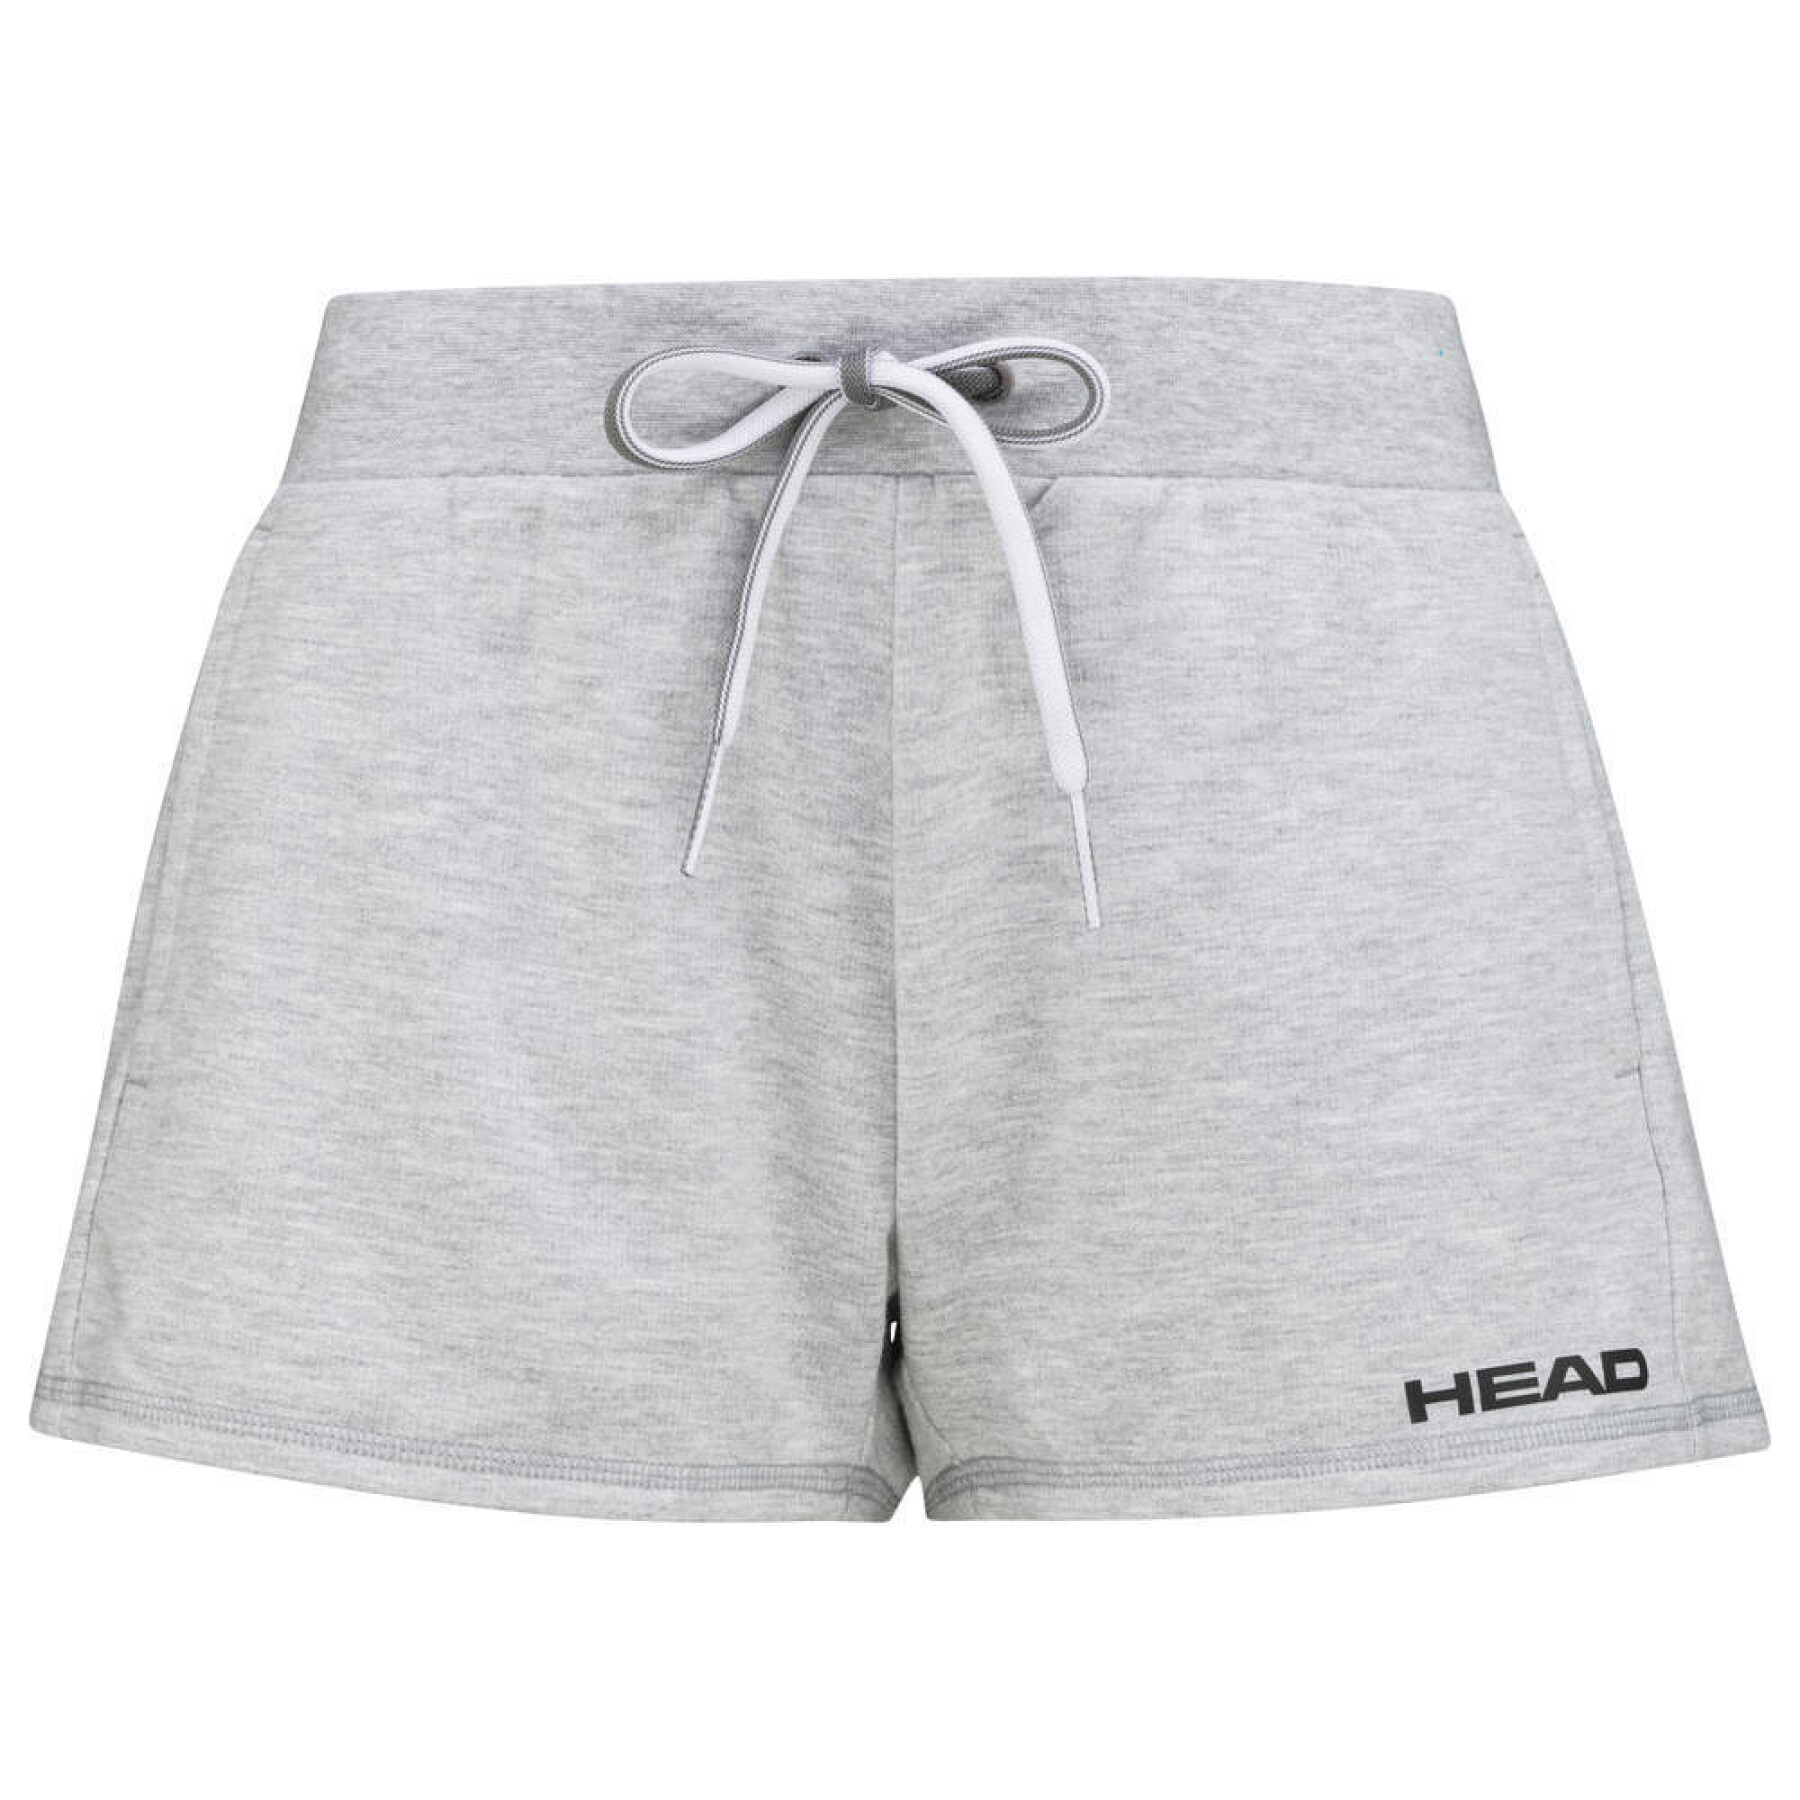 Women's shorts Head Club Ann